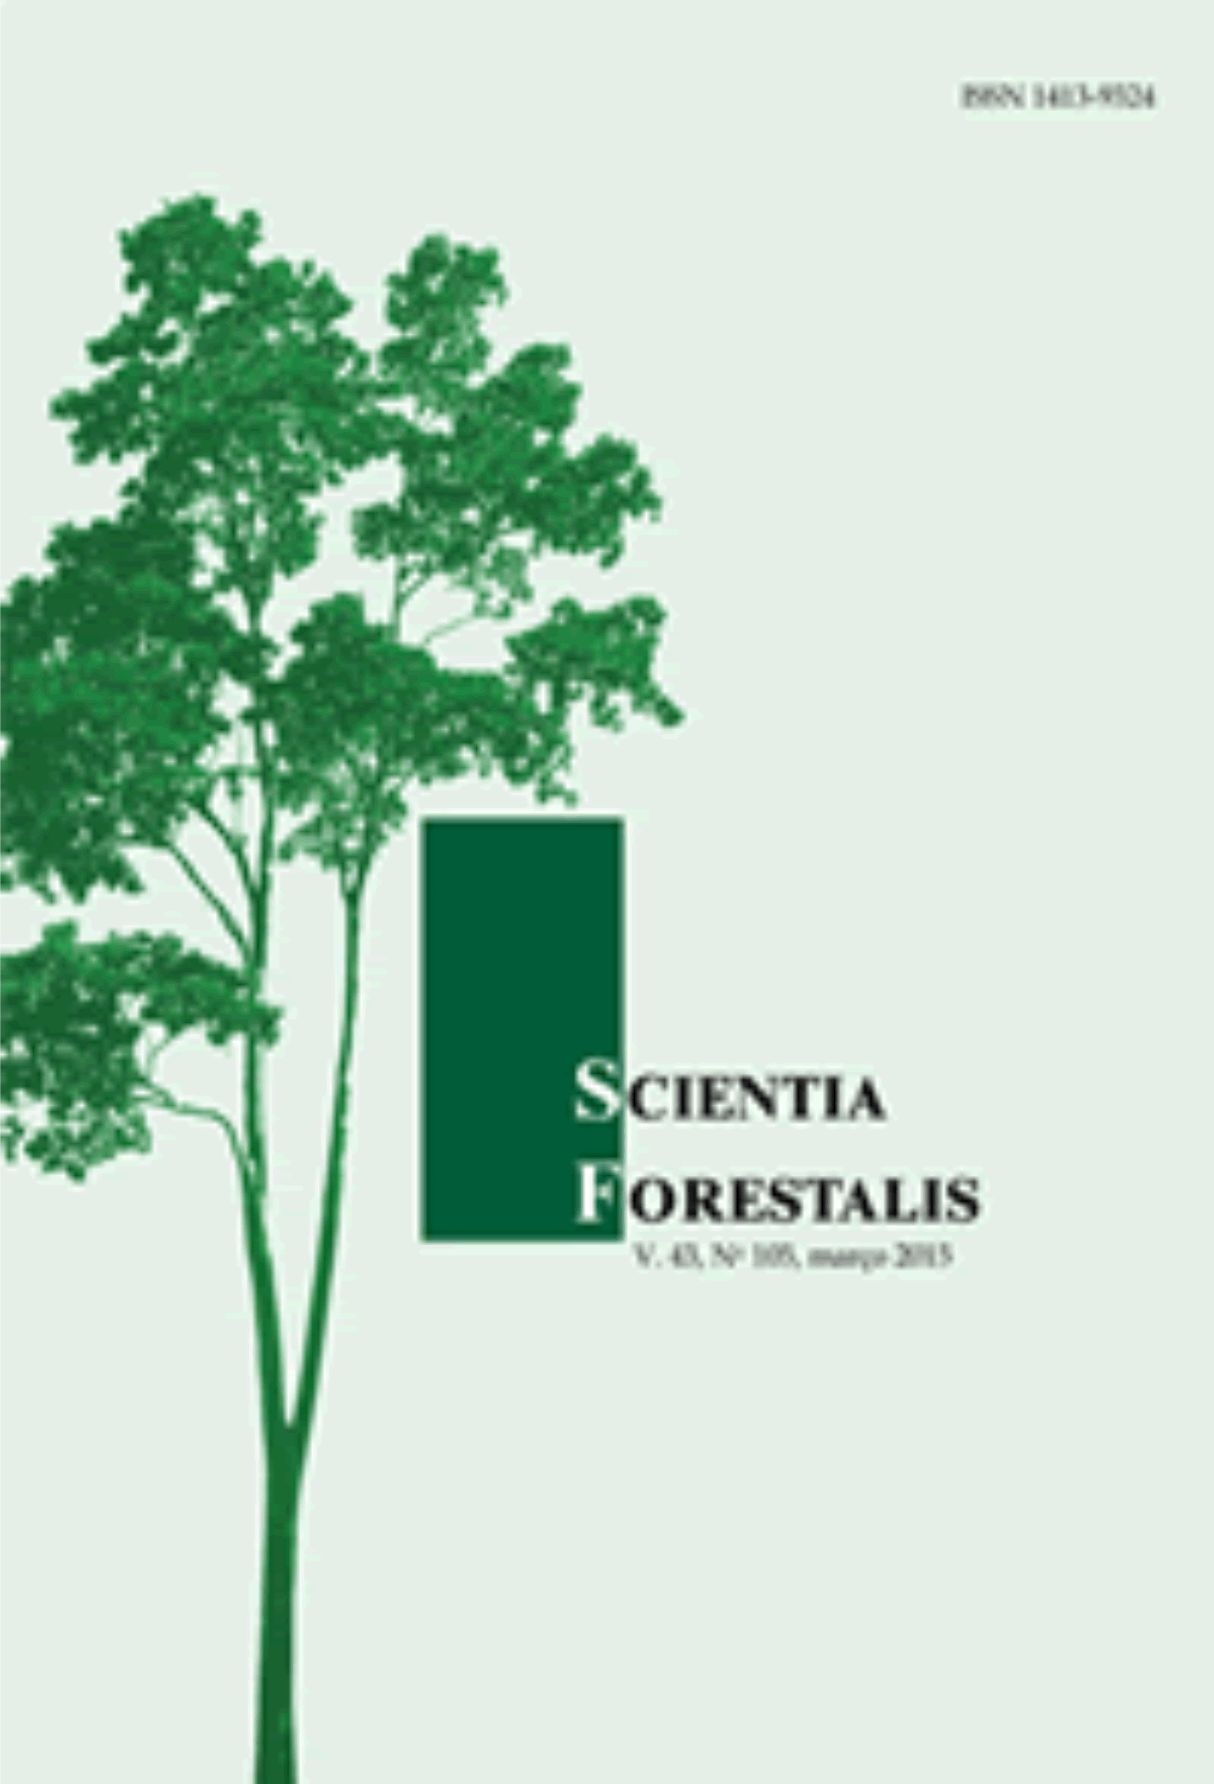 Capa: Revista Scientia Forestalis